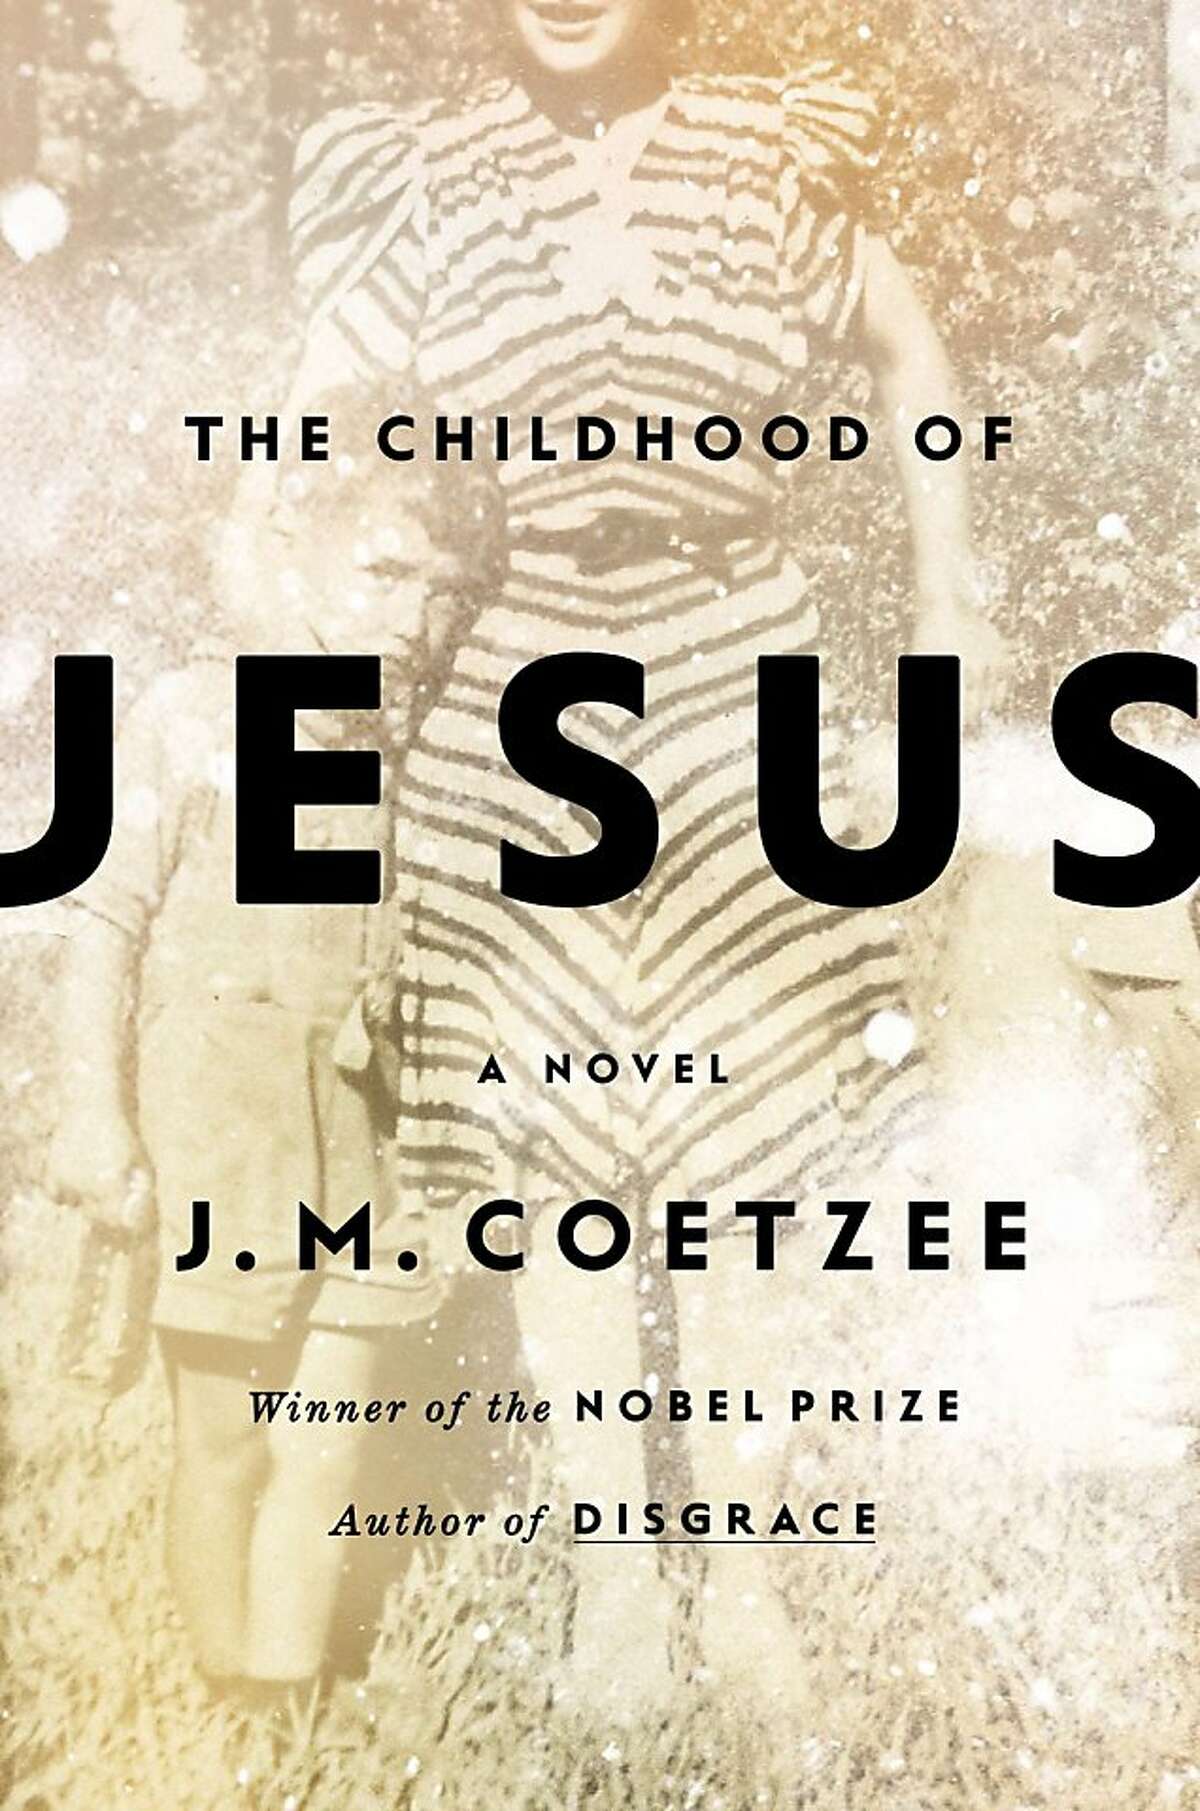 The Childhood of Jesus, by J.M. Coetzee